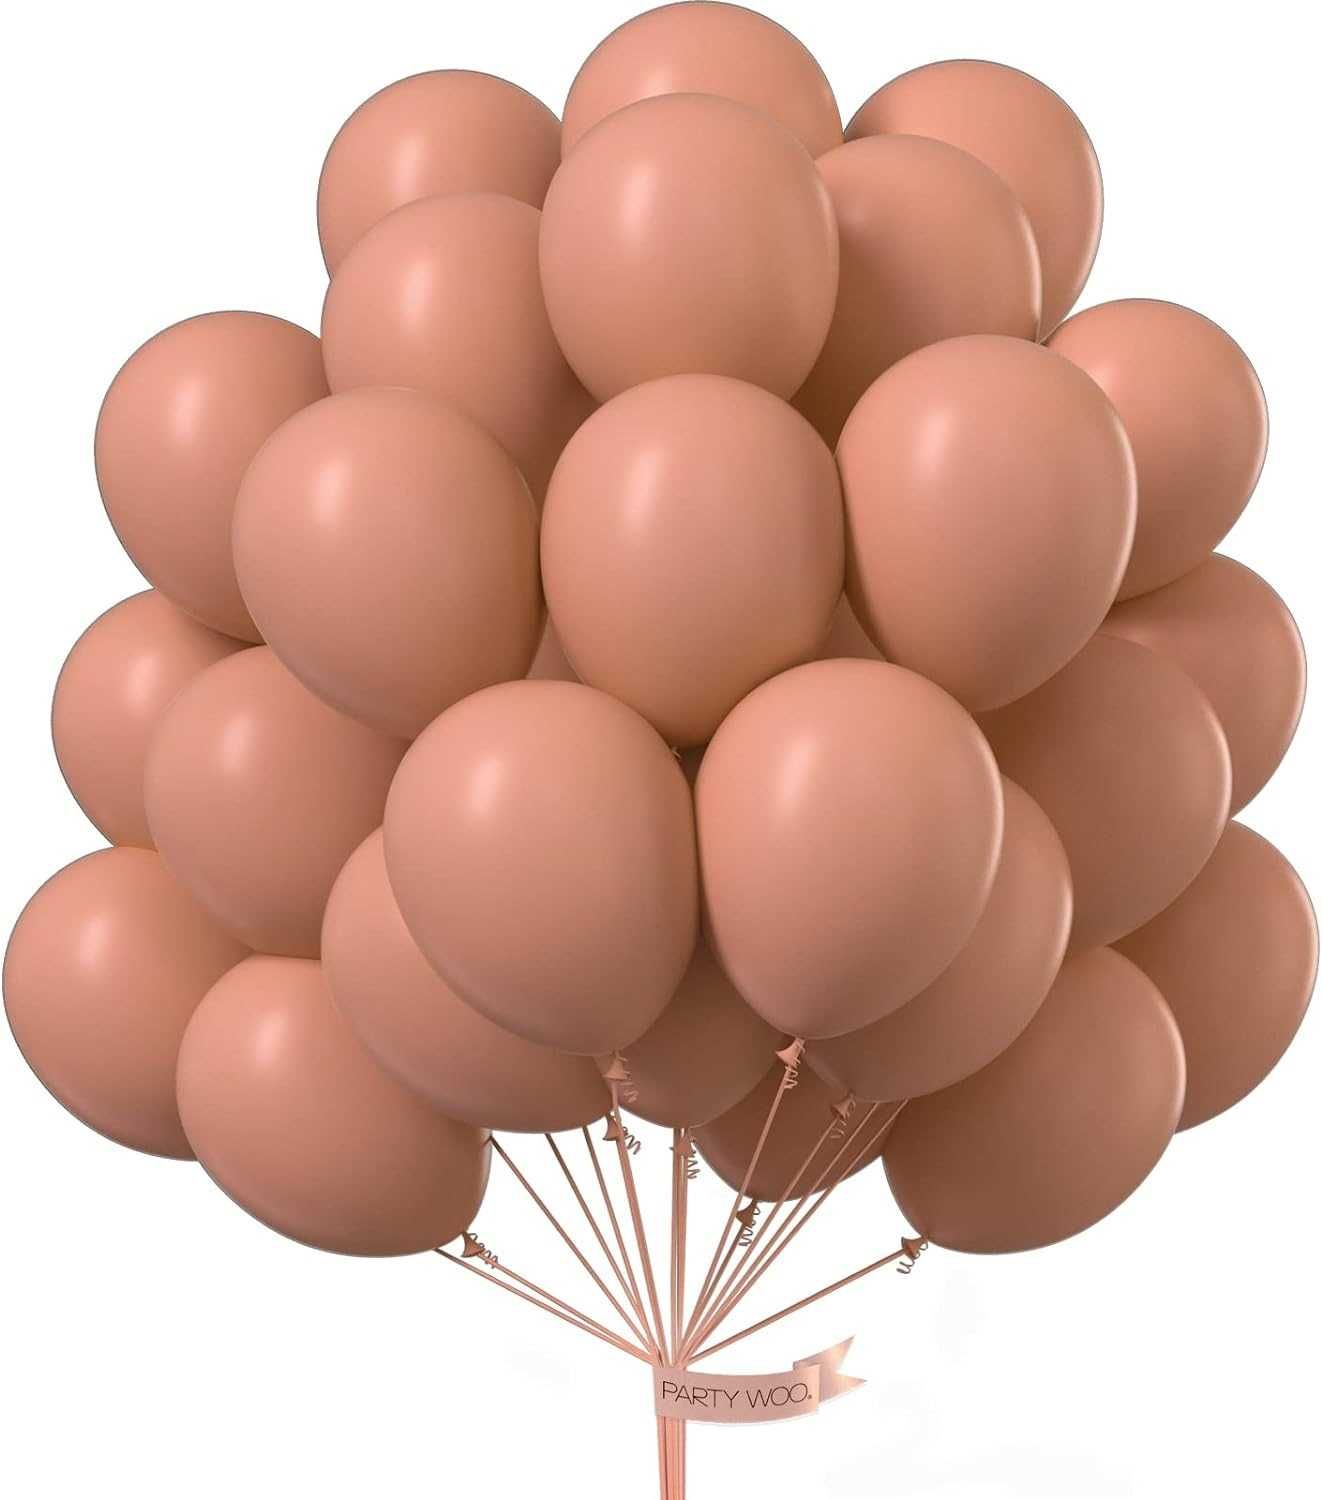 balony partywoo 50szt. 12 cali 30cm kolor brzoskwiniowy piaskowy